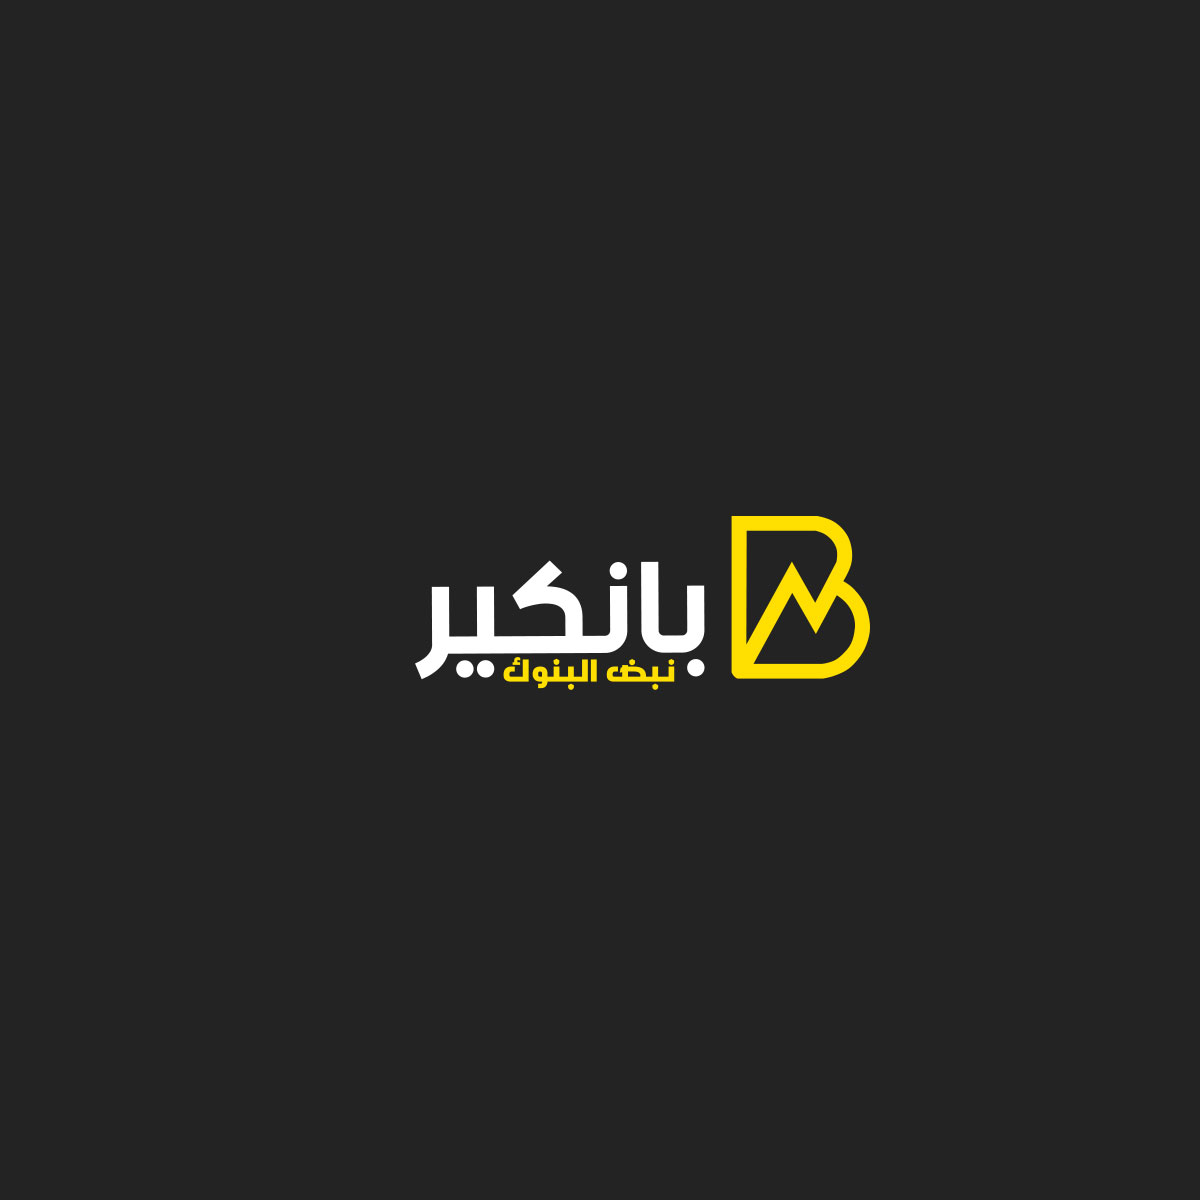 البنك الأهلي المصري: خدمة كاش أواي متواجدة في 450 محطة وقود لإتاحتها لكافة العملاء